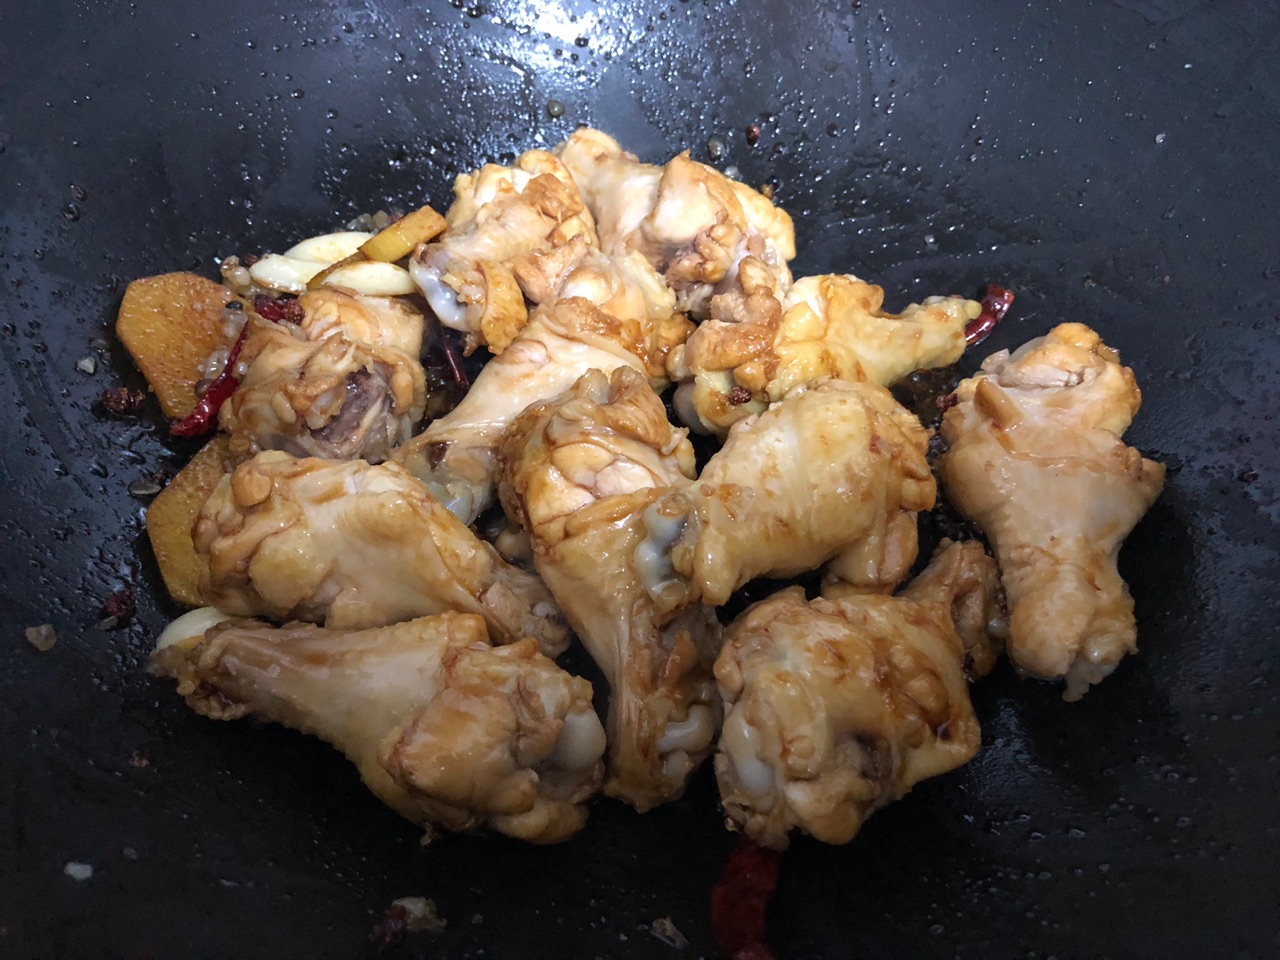 日式咖喱土豆鸡肉盖饭怎么做_日式咖喱土豆鸡肉盖饭的做法_Tina厨房日记_豆果美食